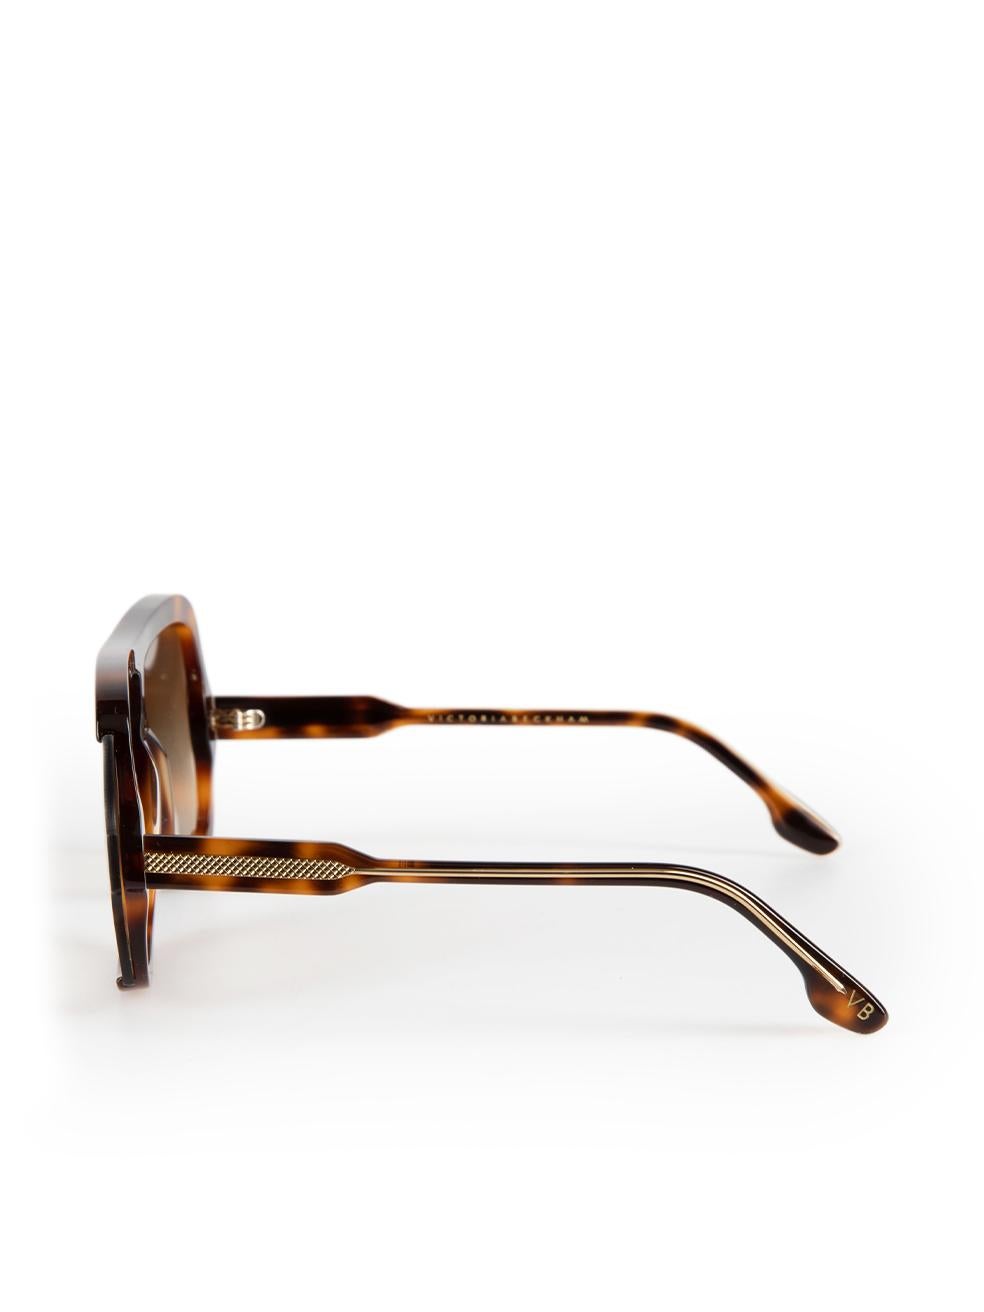 Victoria Beckham Brown Tortoiseshell Shield Sunglasses For Sale 1